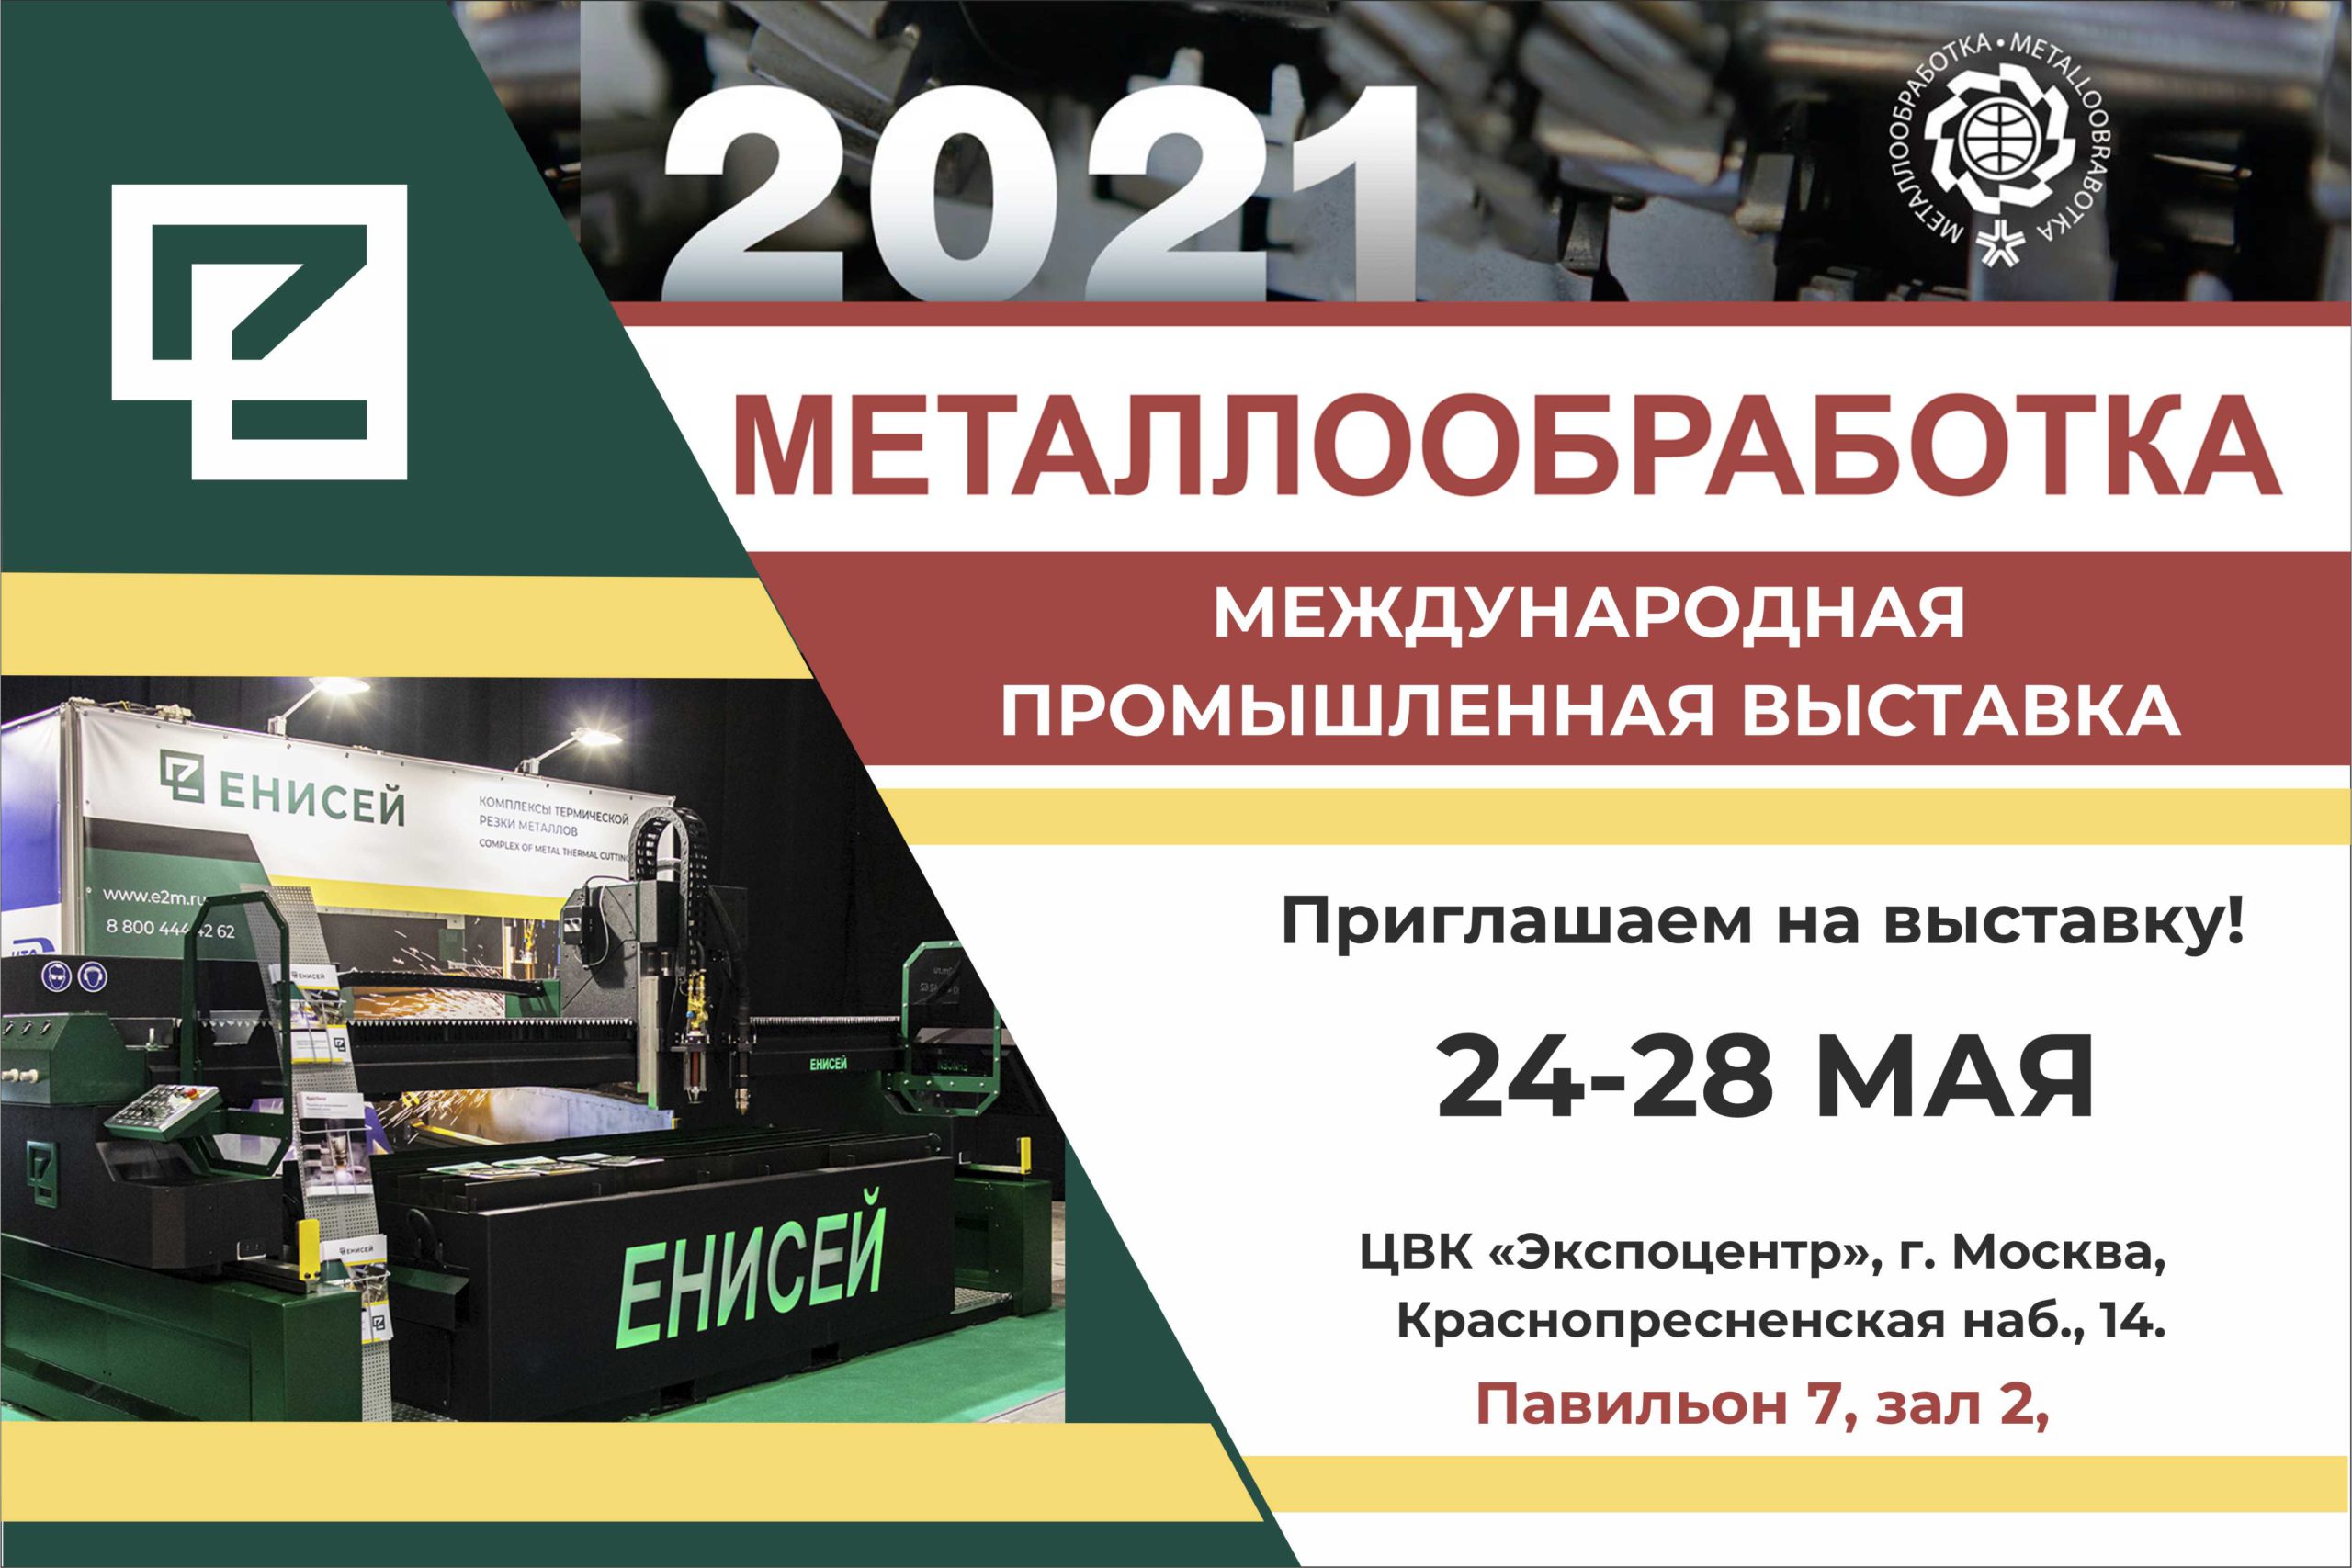 Металлообработка-2021. Самое масштабное мероприятие в отрасли России.